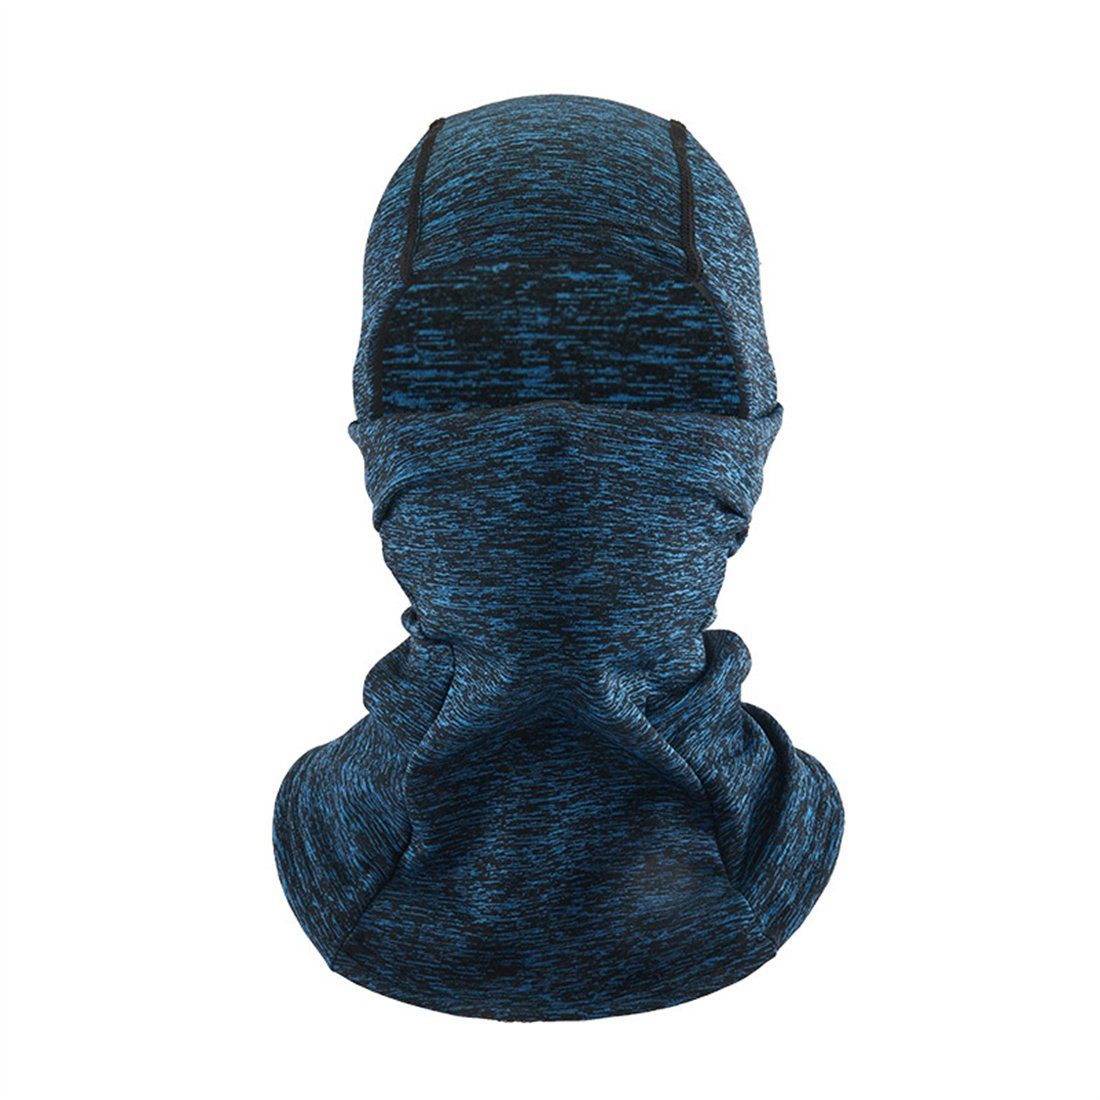 DÖRÖY Sturmhaube Winter Kopfbedeckung, Radfahren Ski unisex kalte Maske, warme blau